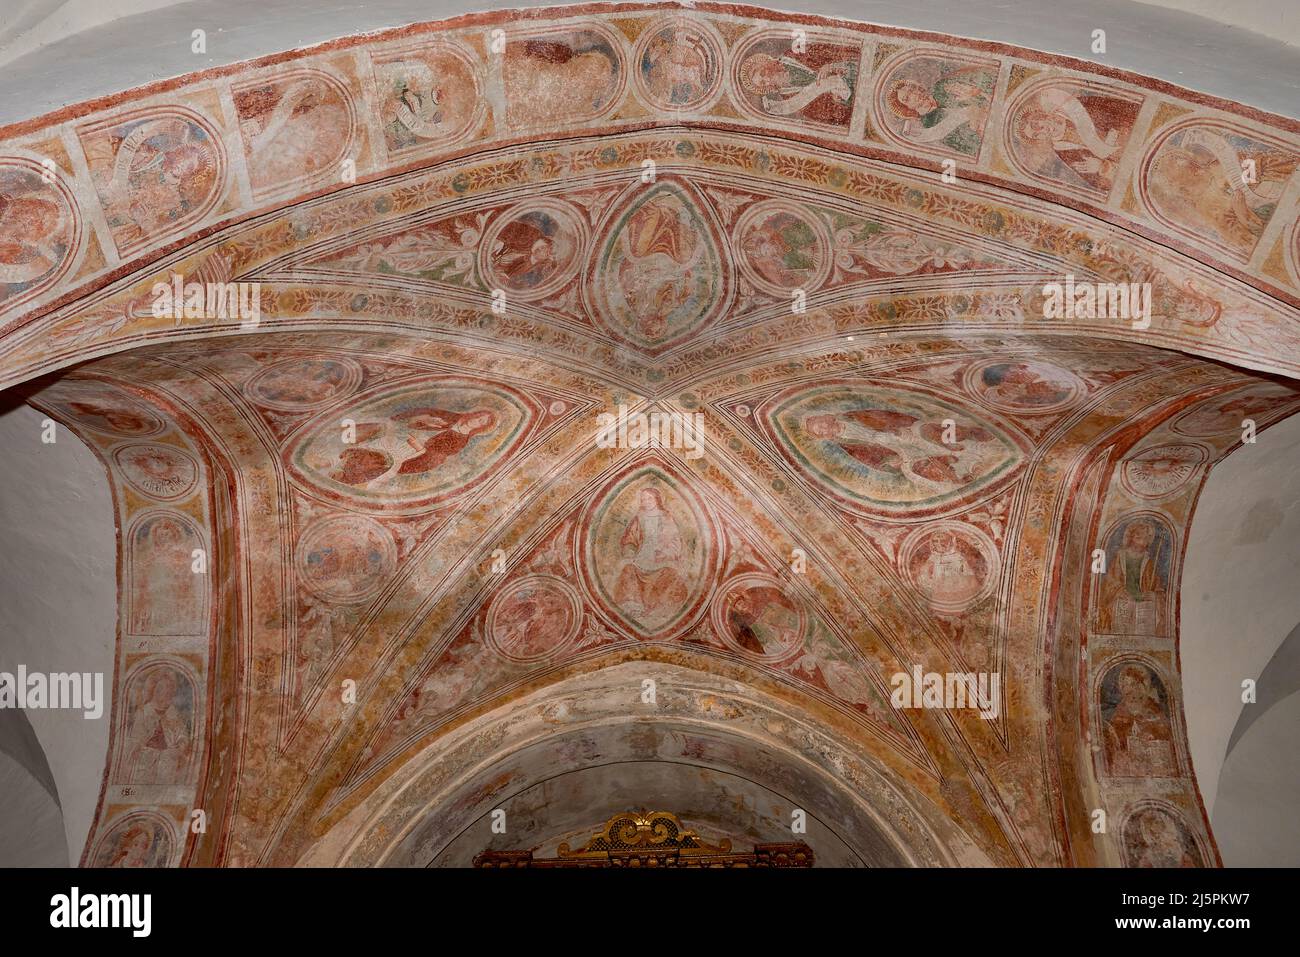 affreschi di pittore bresciano del XVI secolo - Polpenazze (Bs),Italia, chiesa di S.Pietro in Lucone Stock Photo